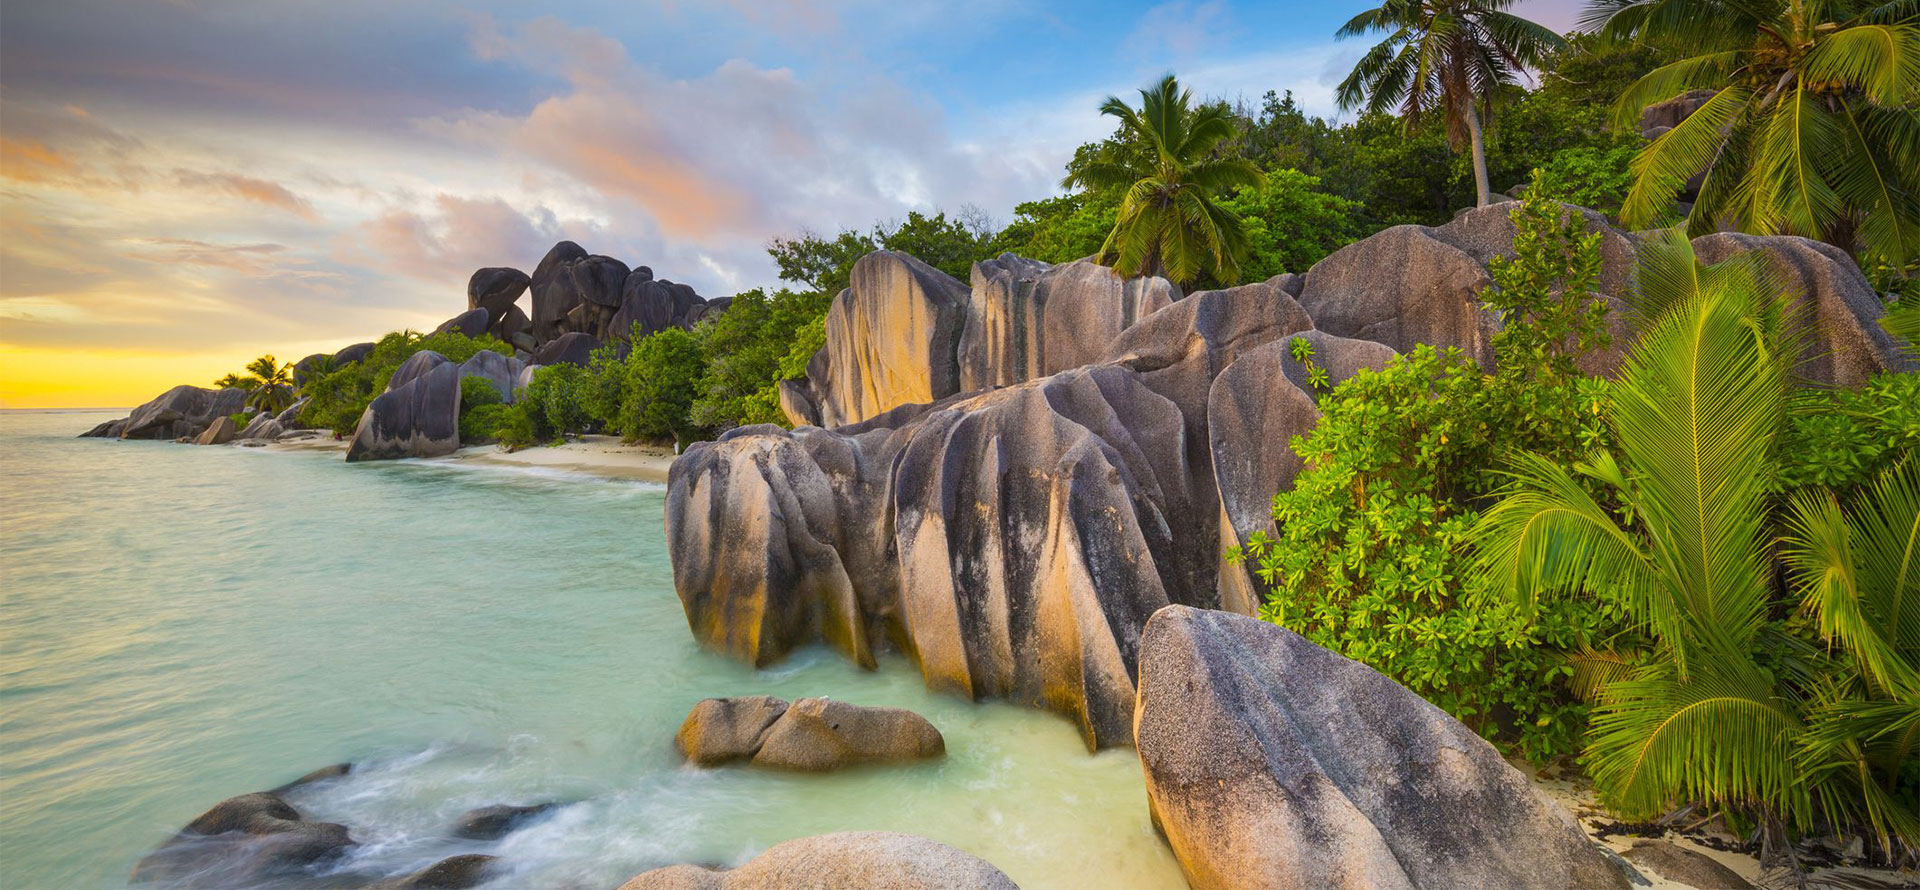 Rocks in Seychelles.